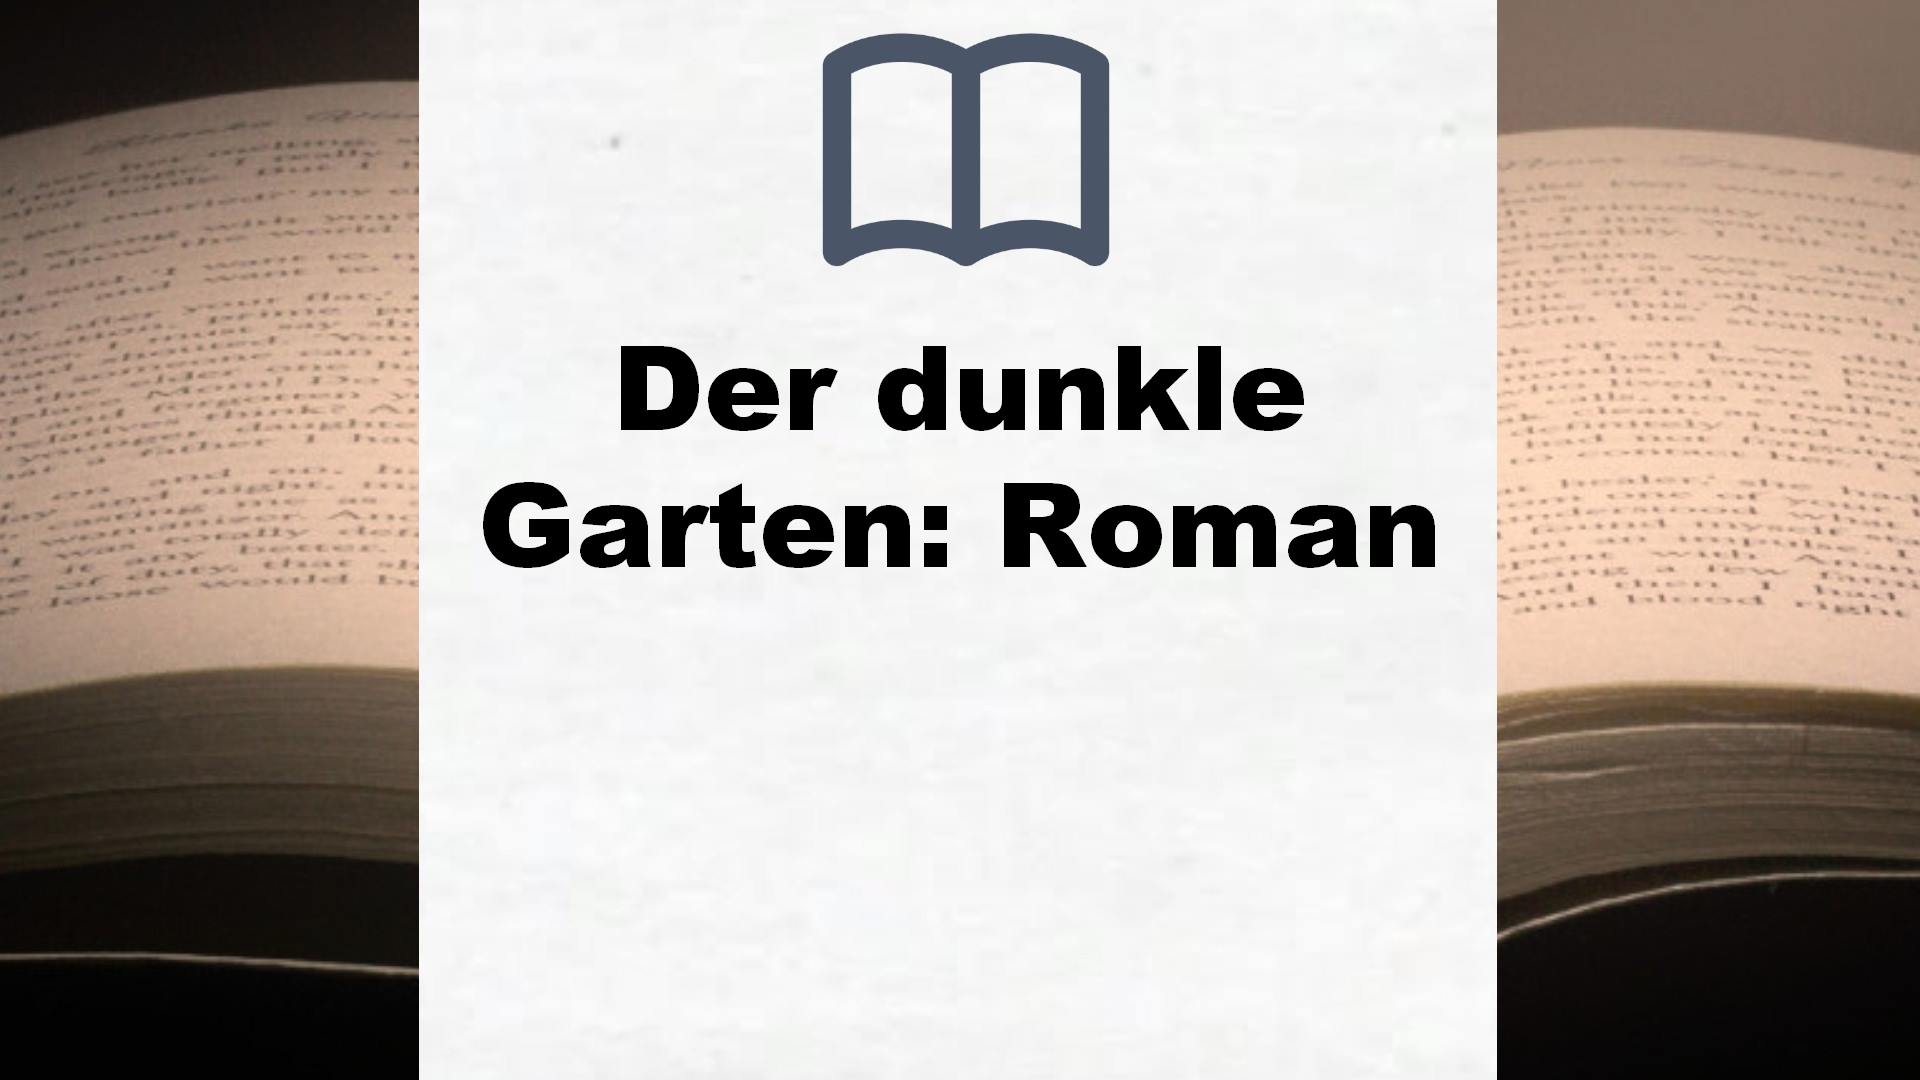 Der dunkle Garten: Roman – Buchrezension